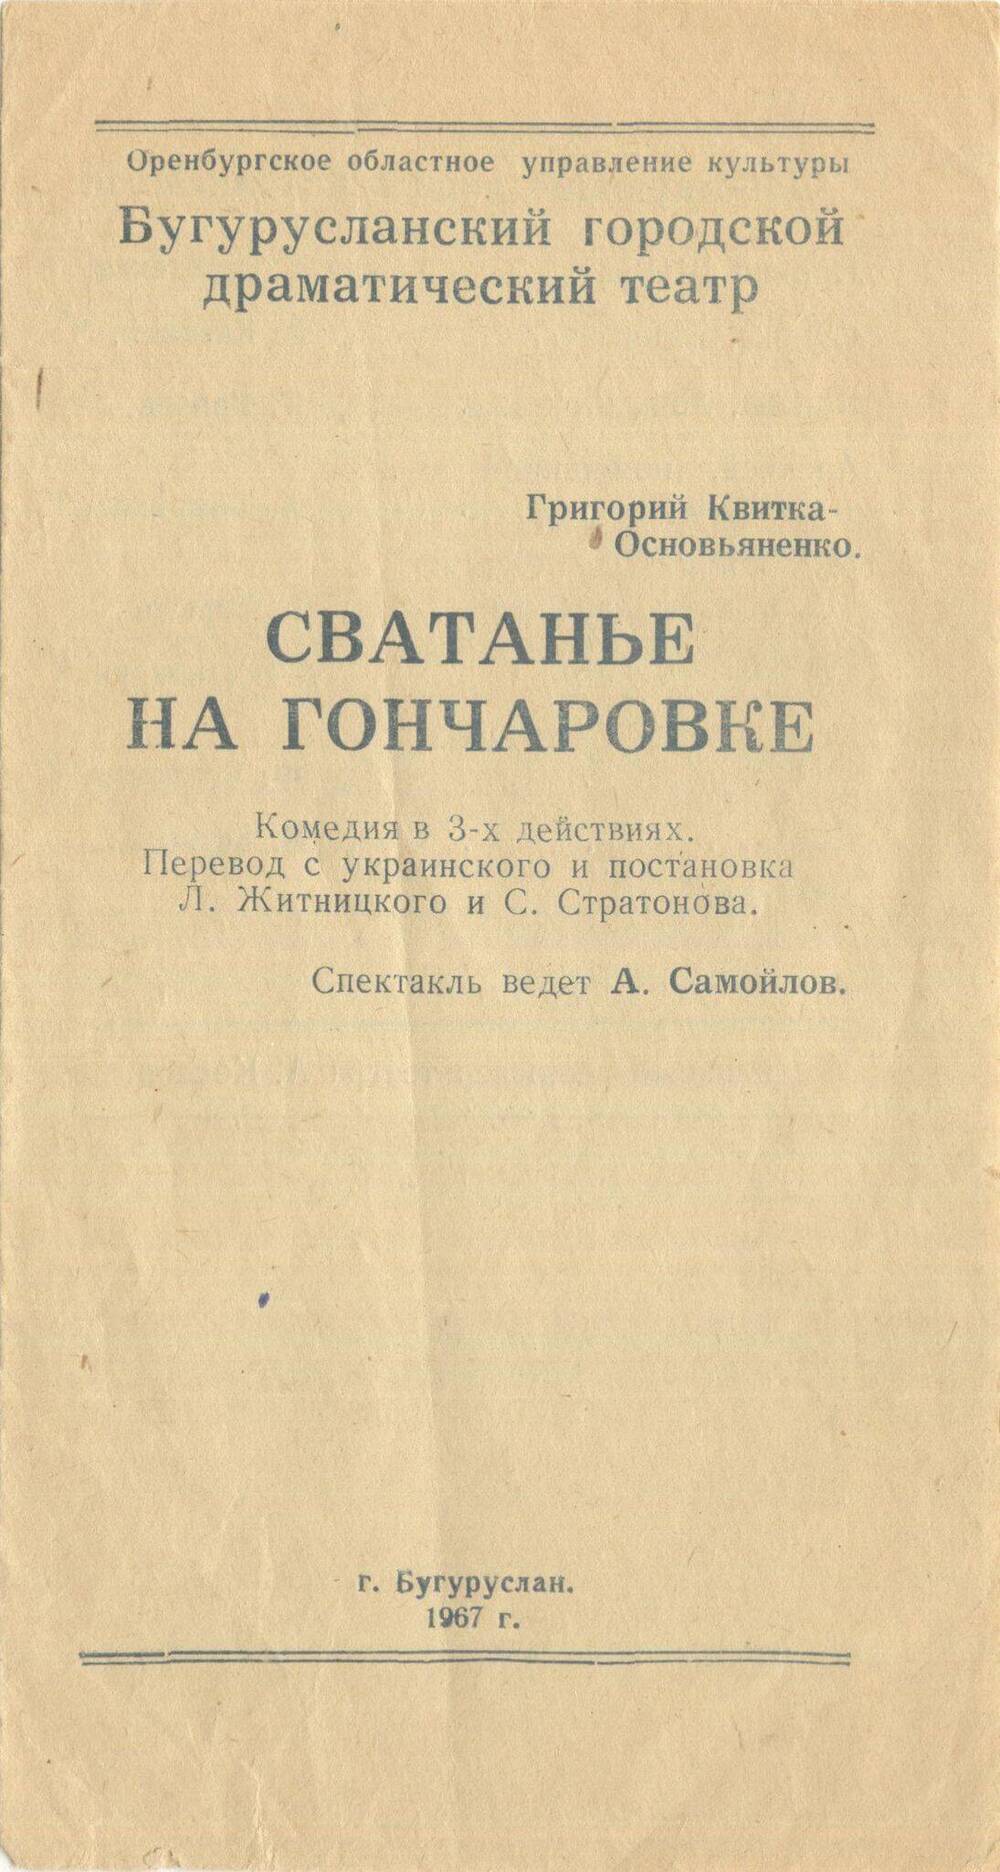 Программа к спектаклю Бугурусланского драматического театра, комедии в 3-х действиях Сватанье на Гончаровке.